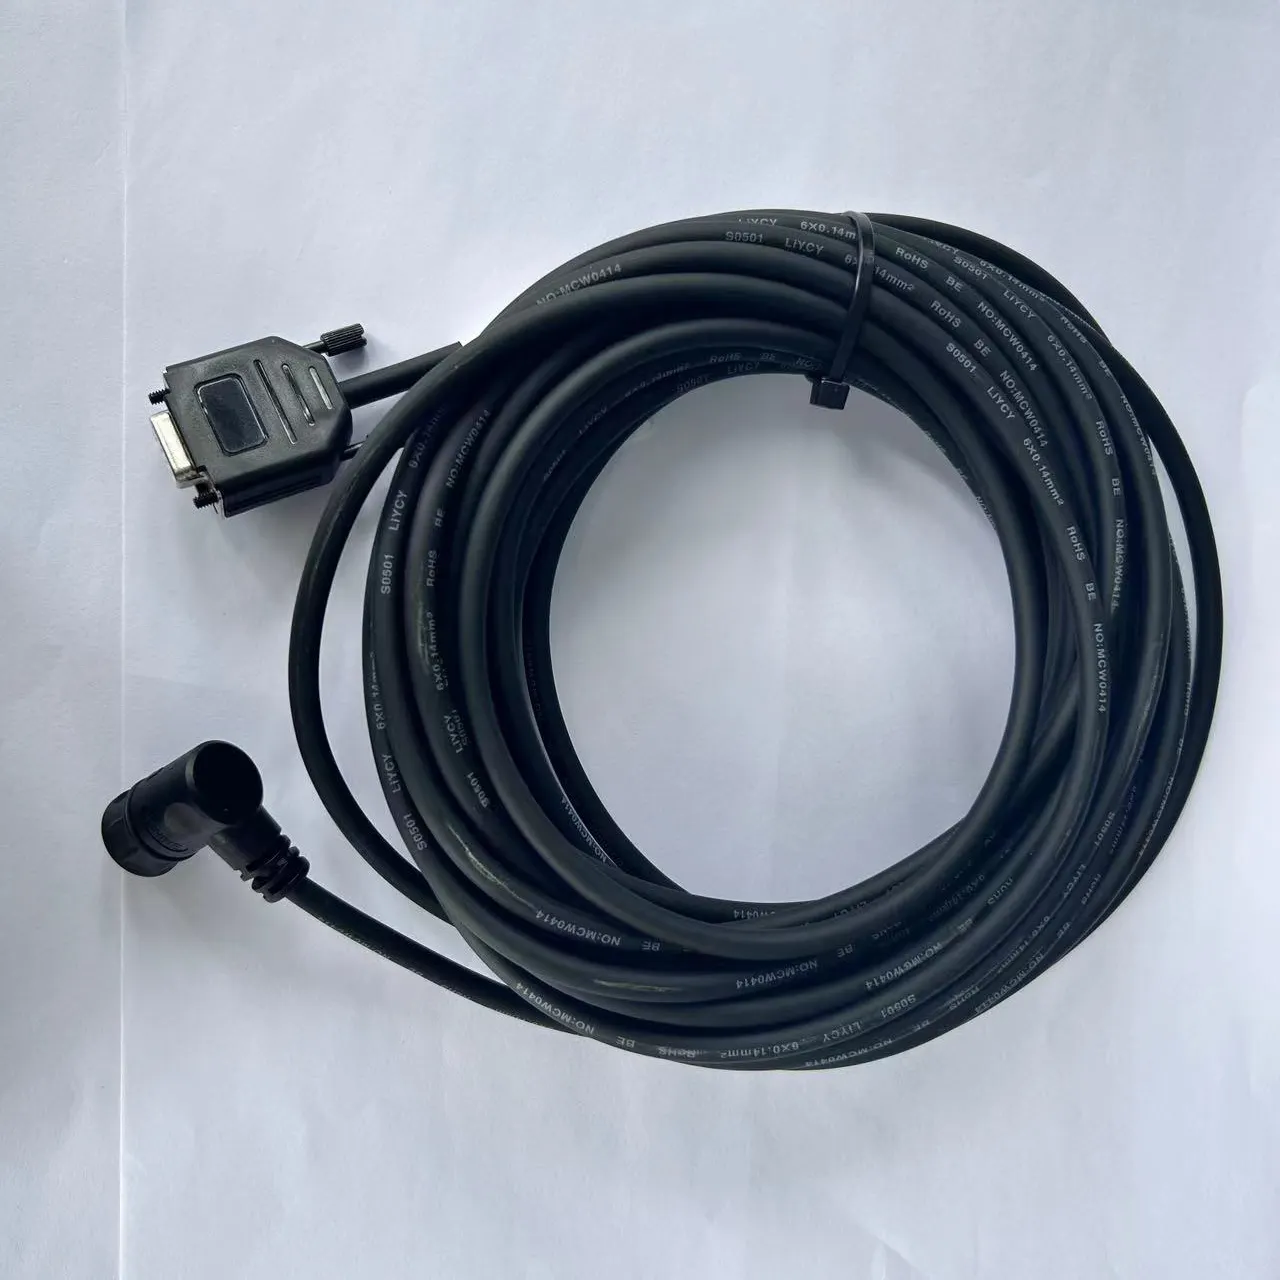 Produsen kawat kustom kabel konektor DB rakitan perlengkapan rumah kabel transfer data harness kabel listrik tenun